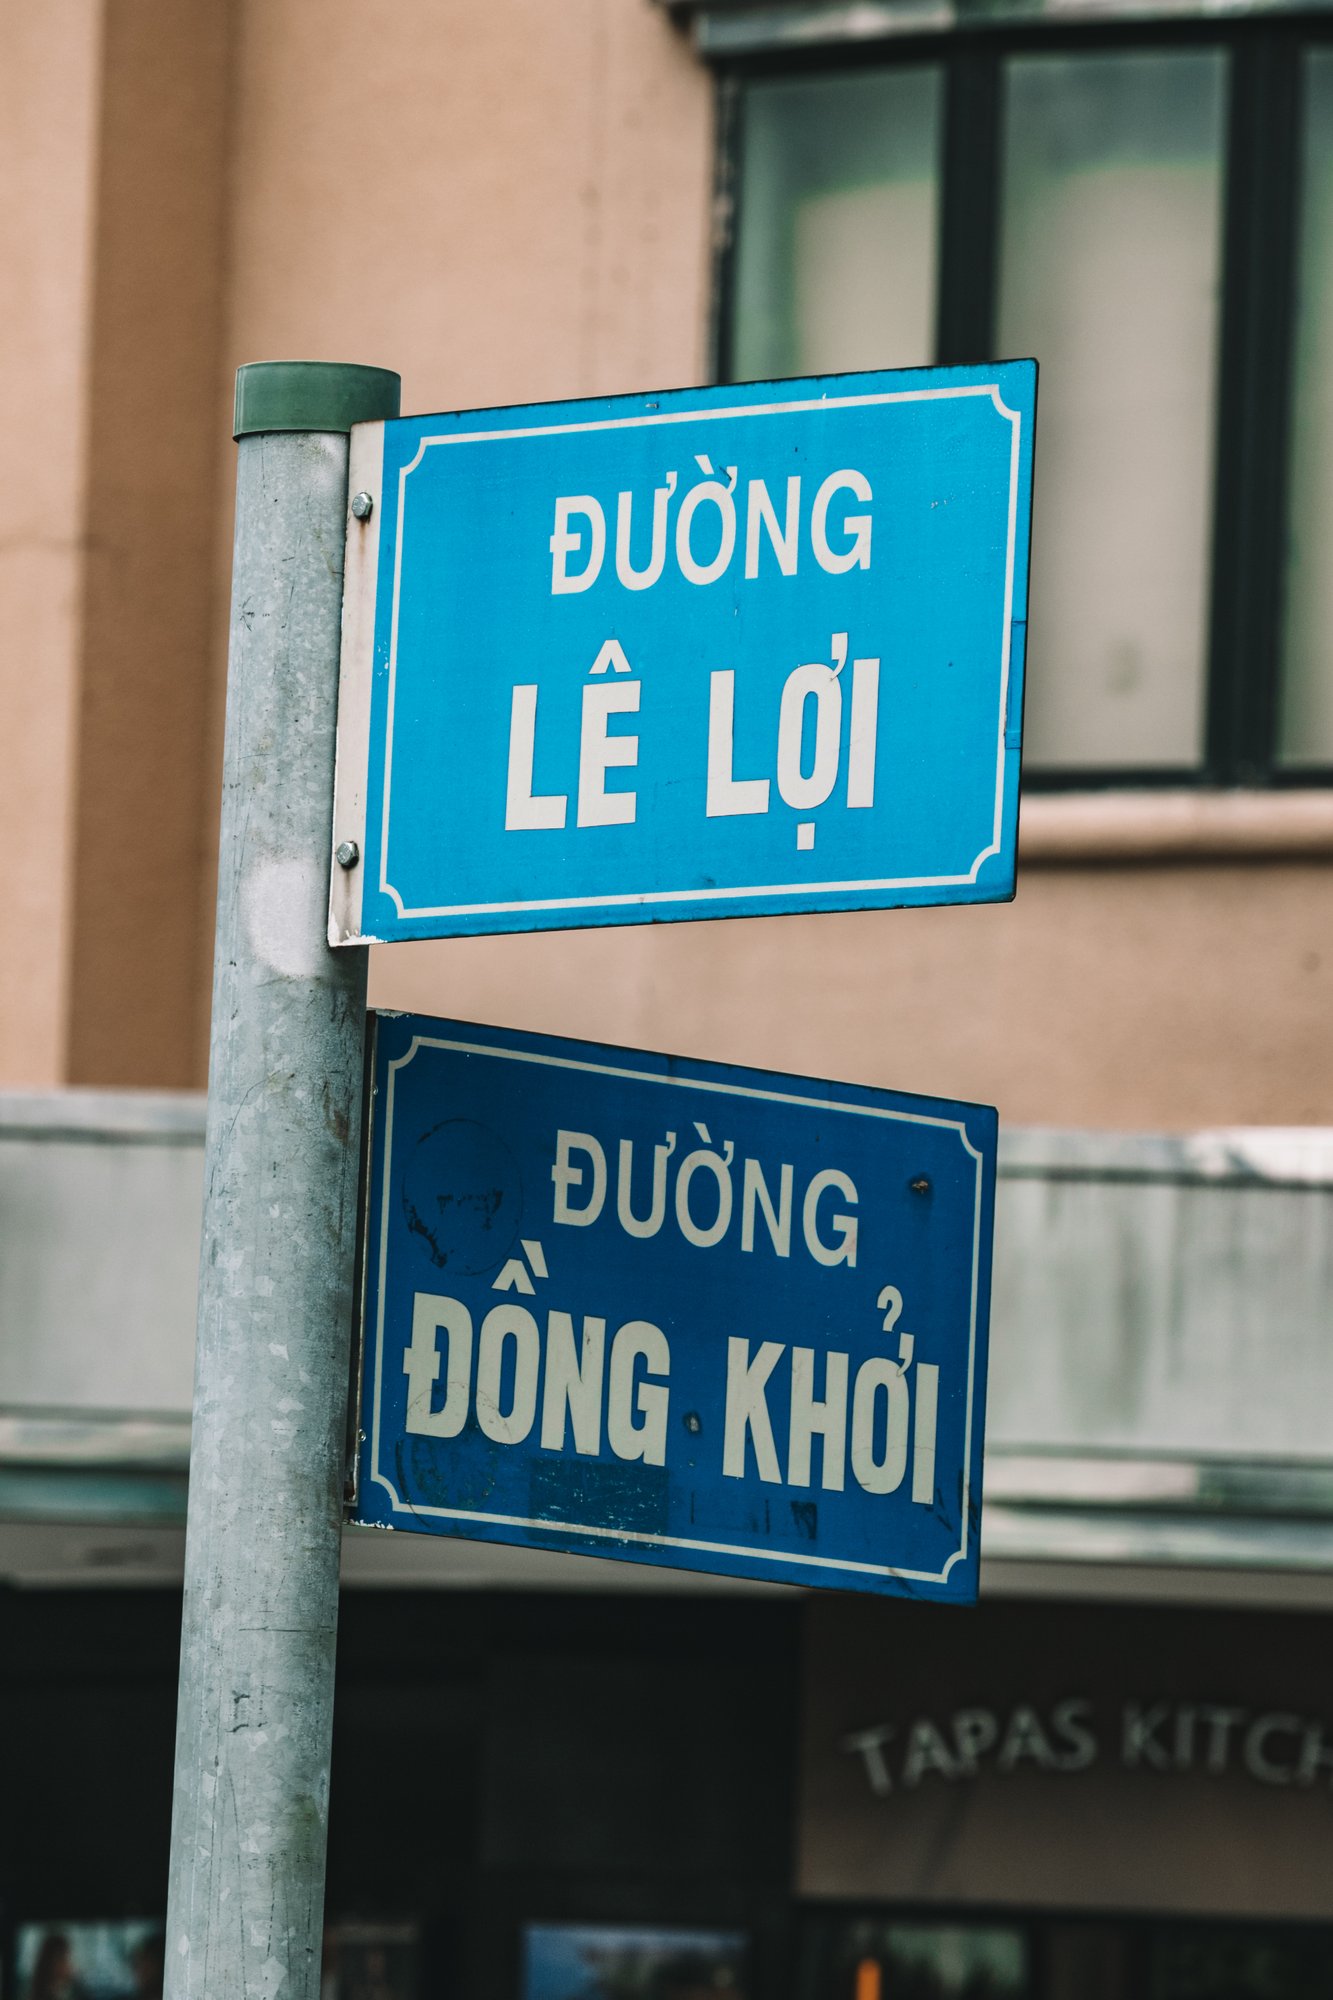 A street sign